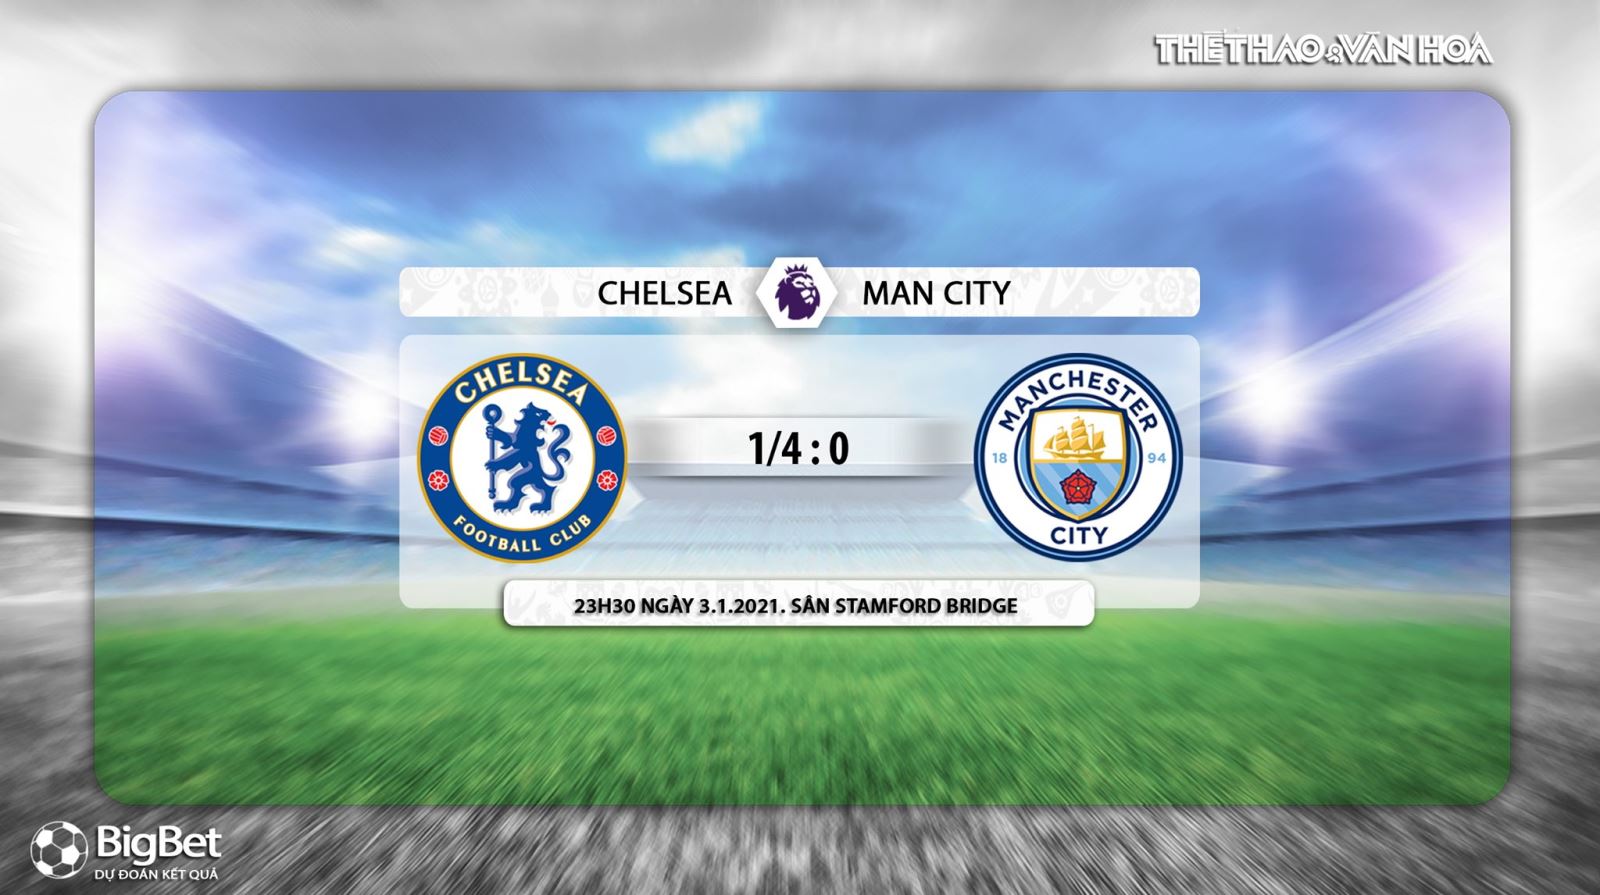 Keo nha cai, Nhận định kết quả, Chelsea vs Man City, K+, K+PM Trực tiếp bóng đá Anh hôm nay, Vòng 17 Giải Ngoại hạng Anh, Trực tiếp K+PM, Trực tiếp bóng đá, Trực tiếp Chelsea